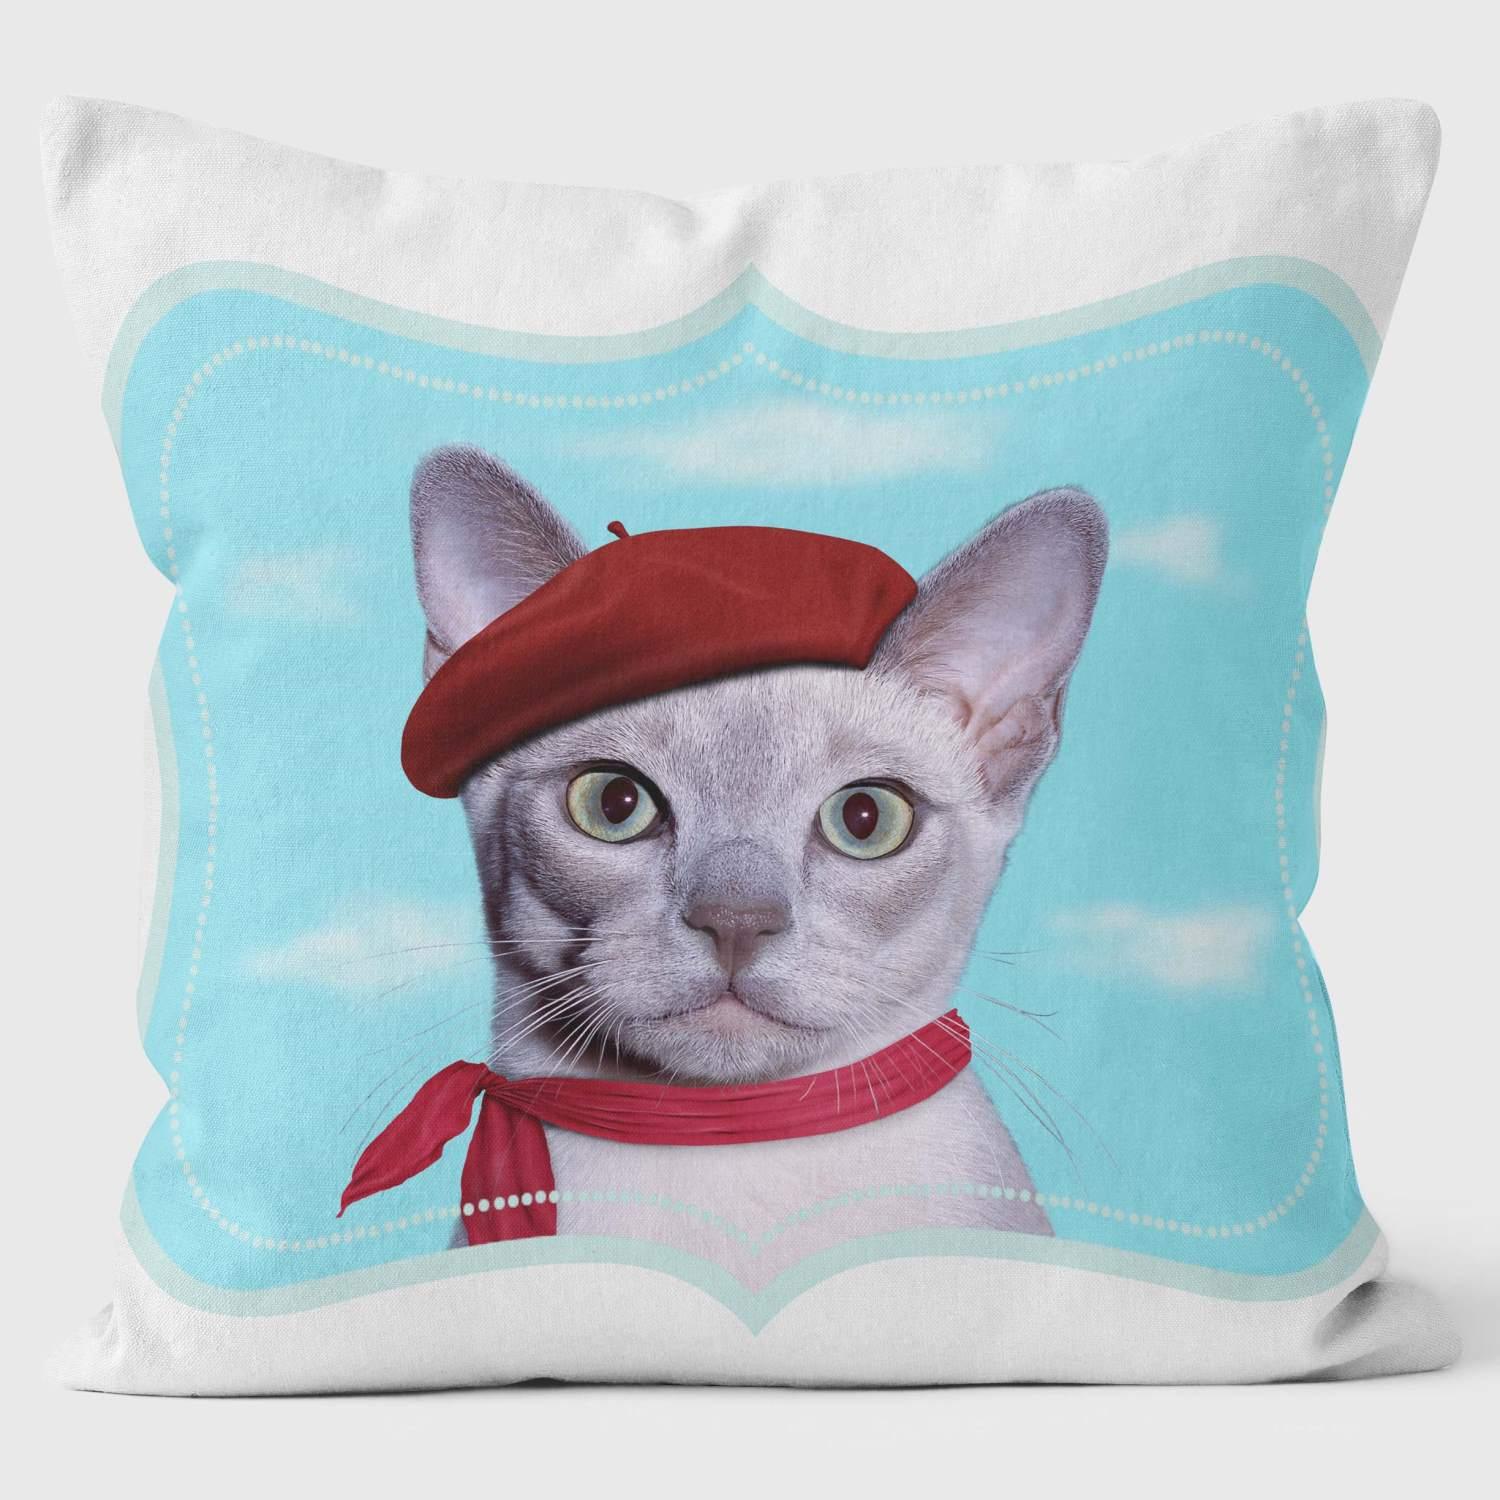 Lulu - Pets Factor Kids Pillows